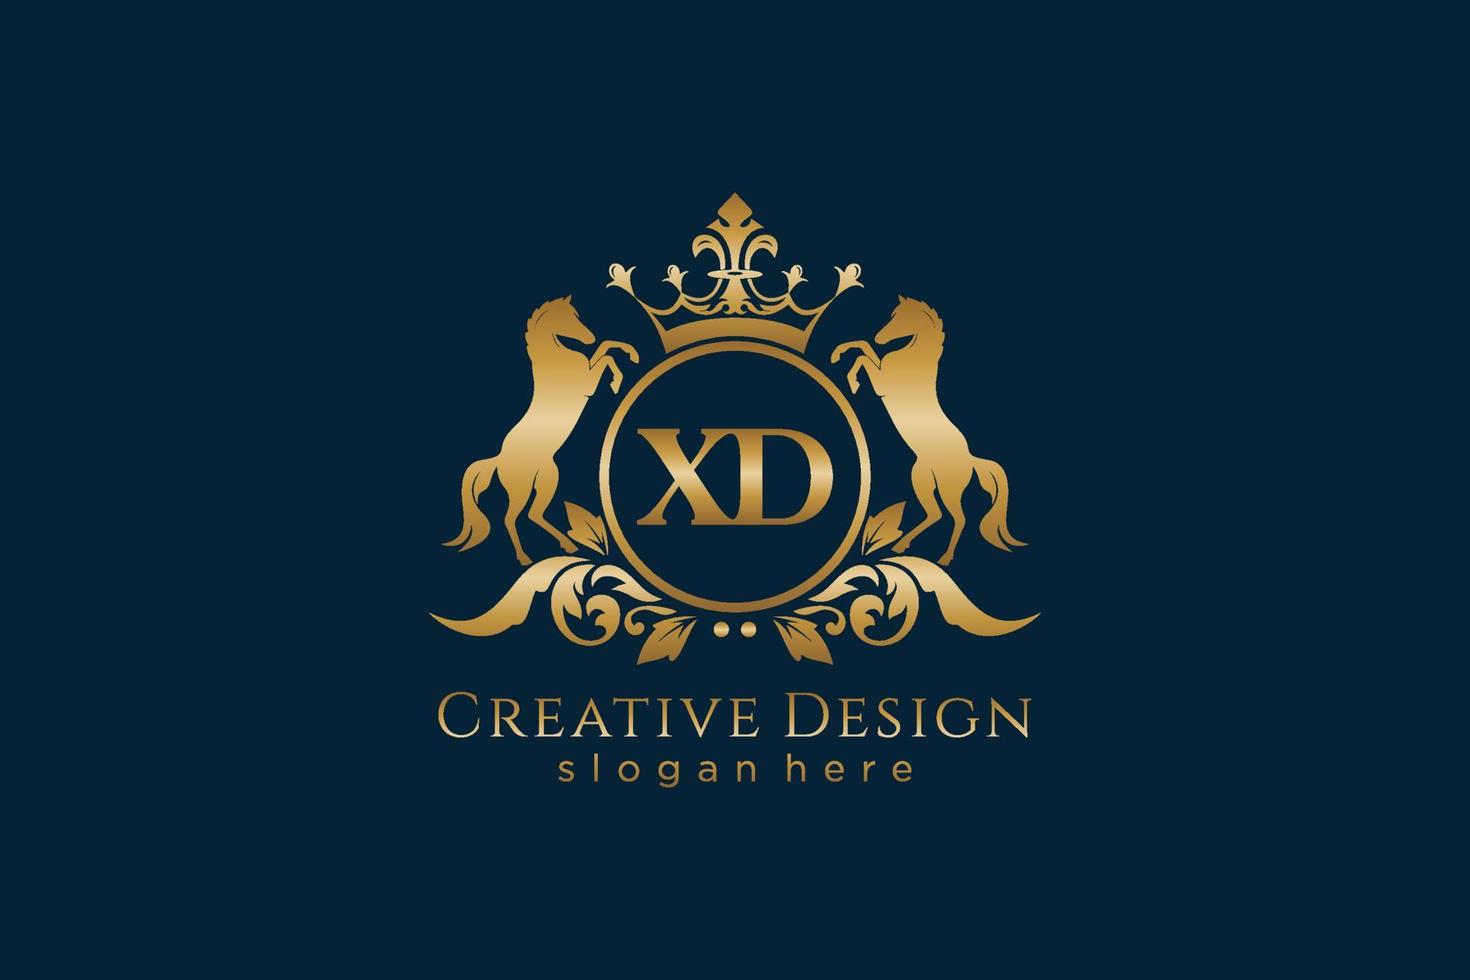 cresta dorada retro xd inicial con círculo y dos caballos, plantilla de insignia con pergaminos y corona real, perfecta para proyectos de marca de lujo vector